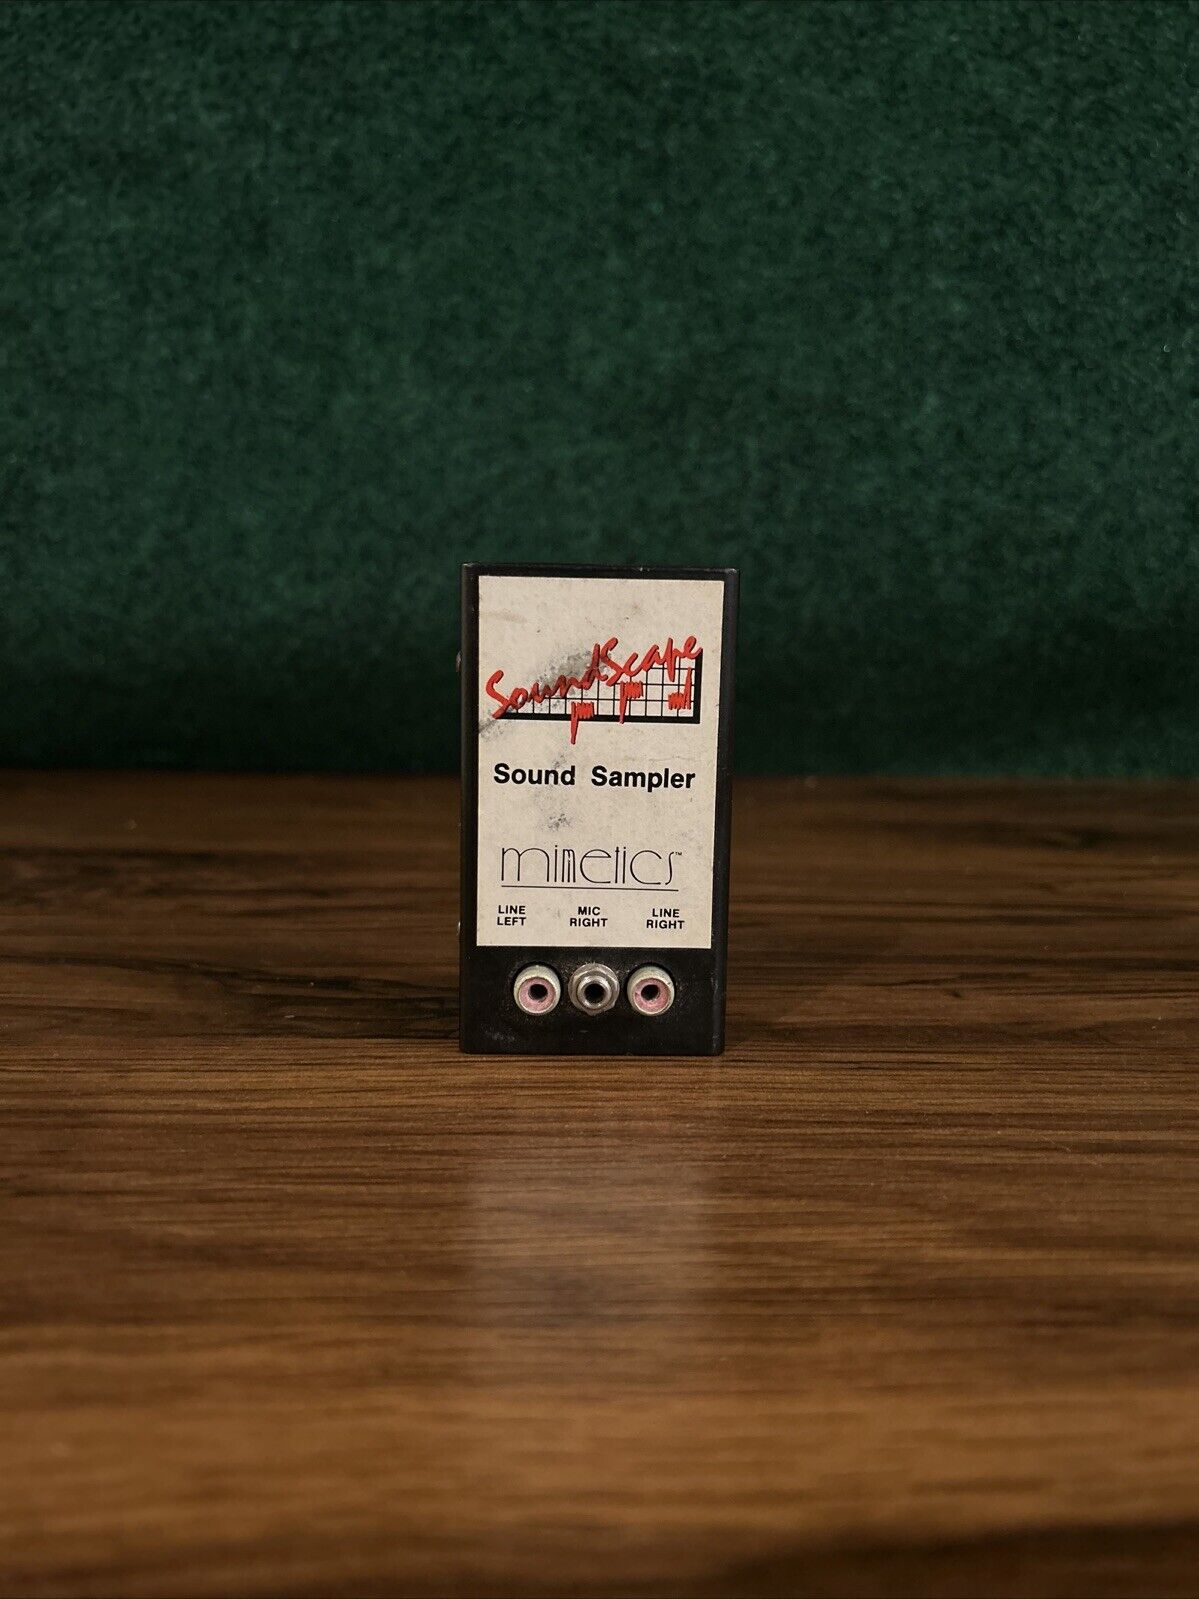 Amiga 1000 Mimetics soundscape sound sampler, Box, Manual, CIB